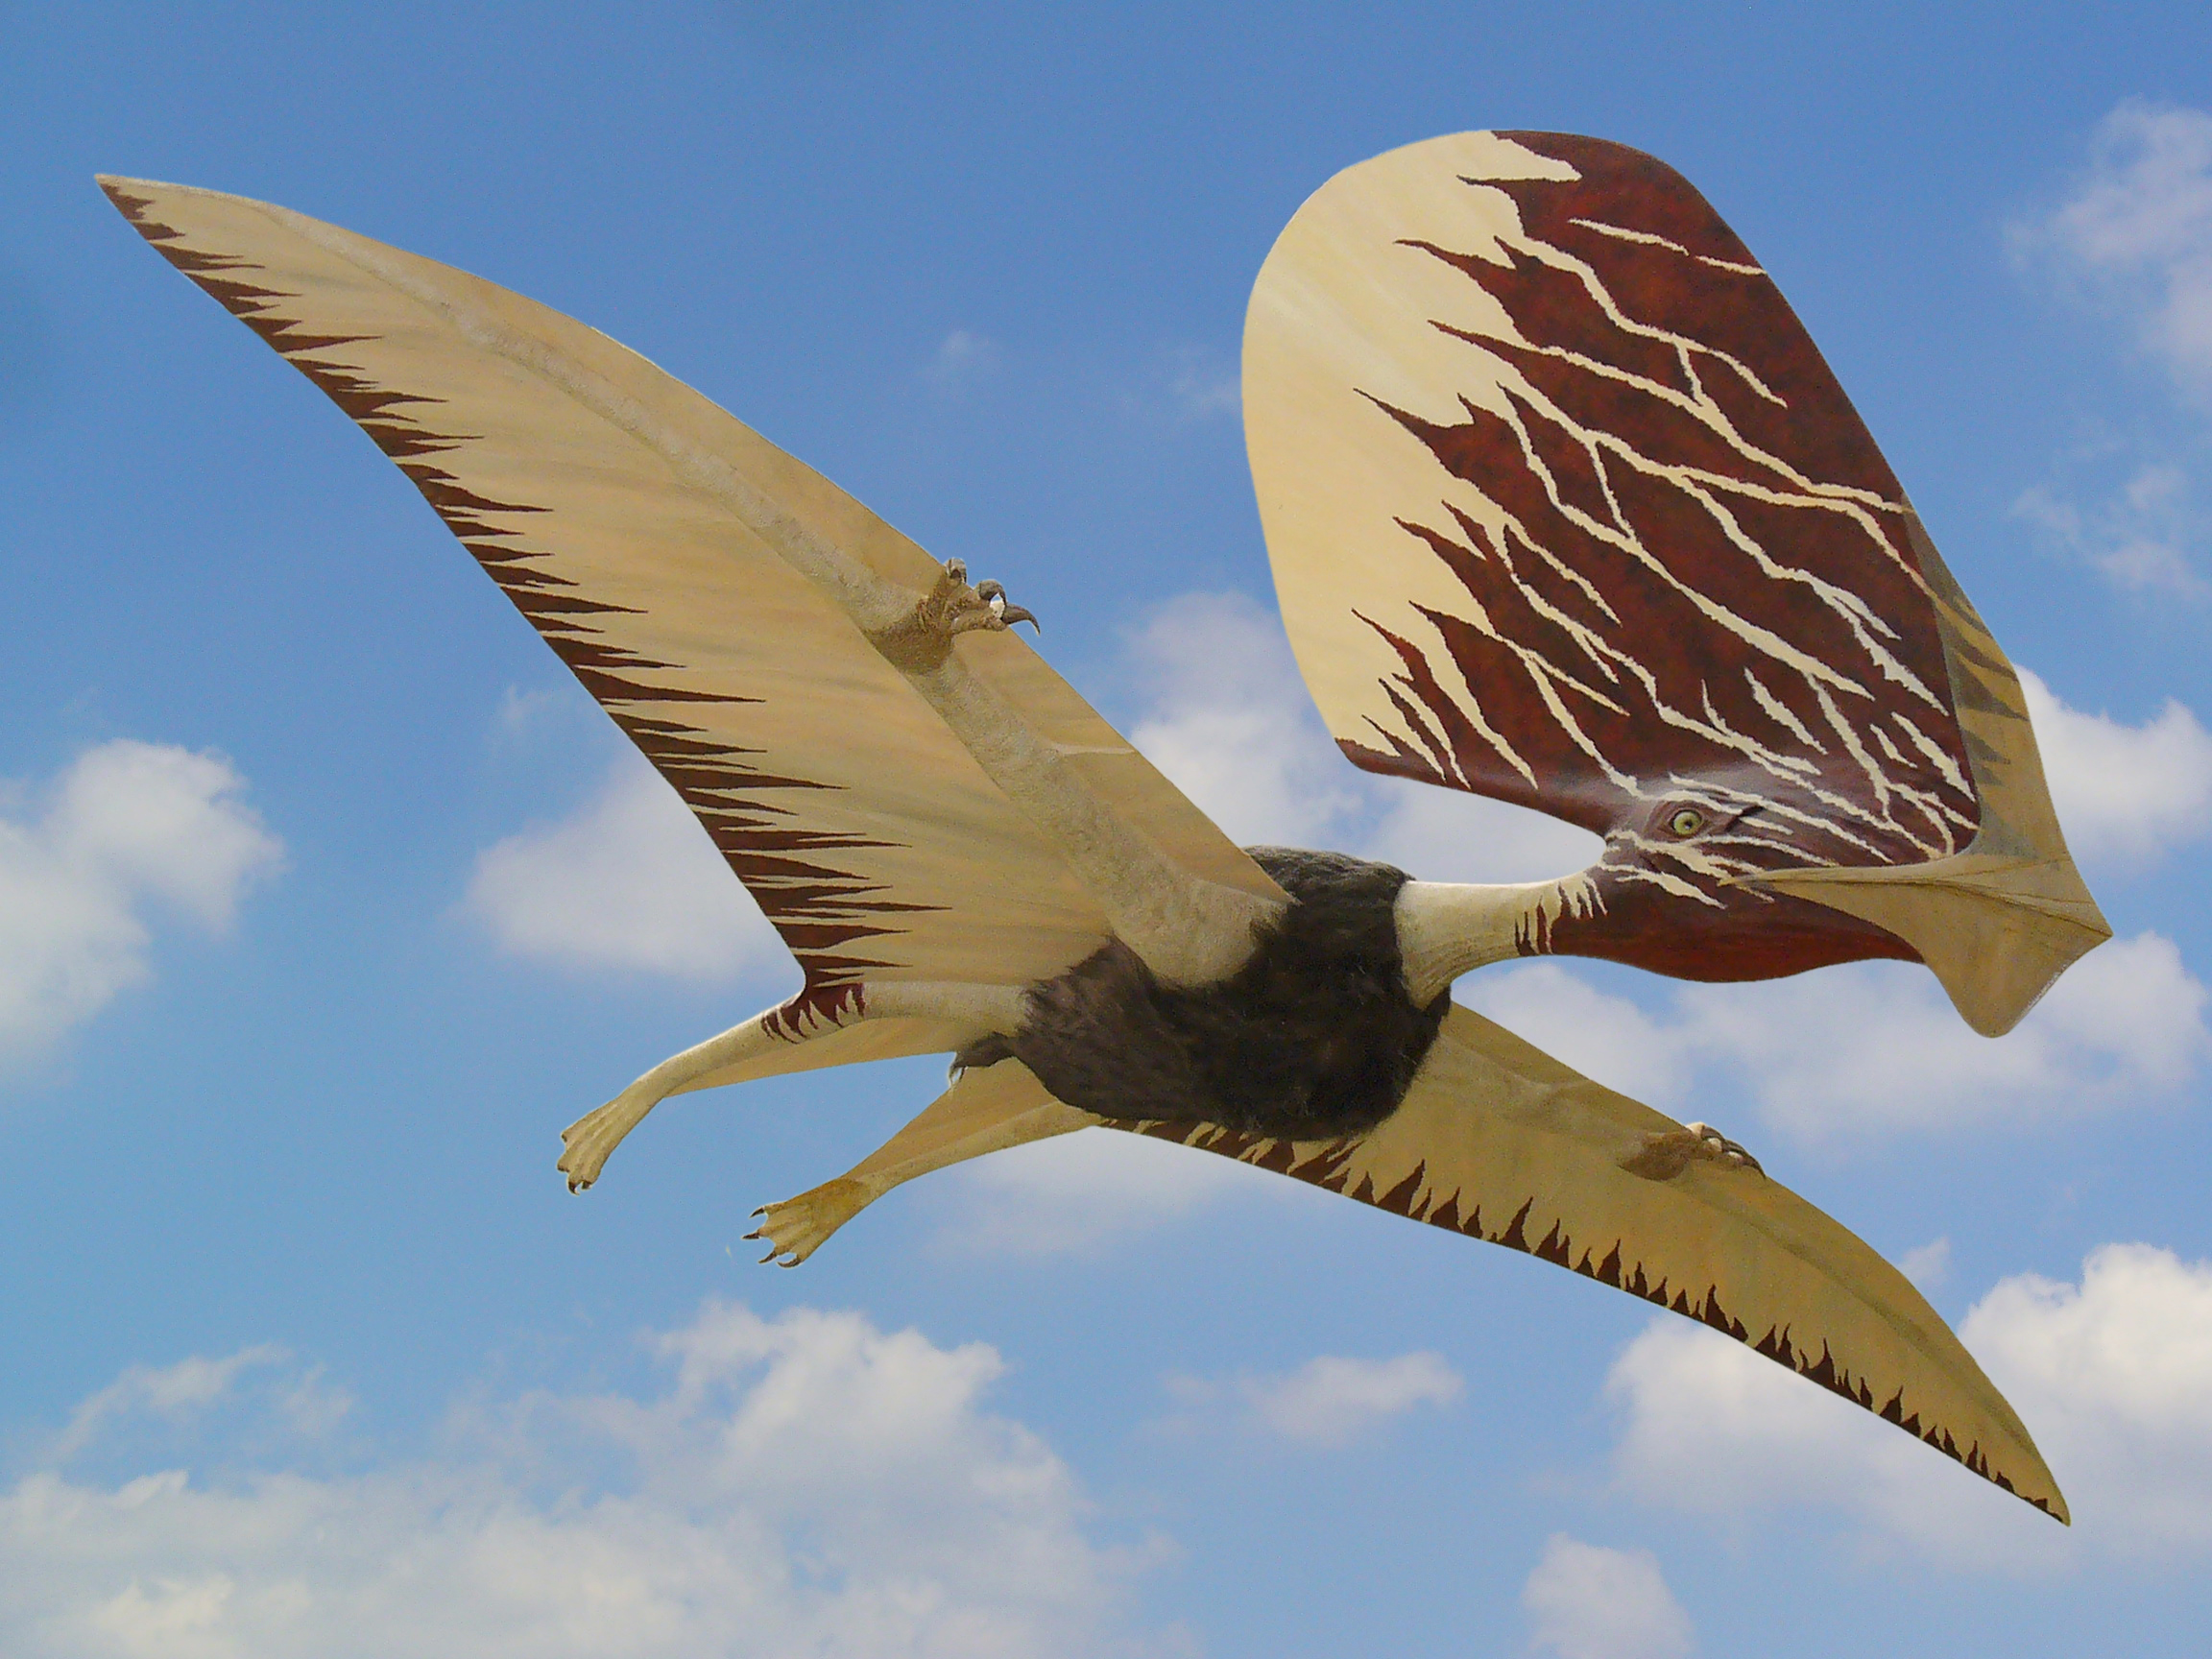 Des chercheurs ont prouvé que les ptérosaures, ces reptiles vivants qui peuplaient le Crétacé inférieur, étaient bien à plumes ! © Susanne Henßen, Wikimedia Commons